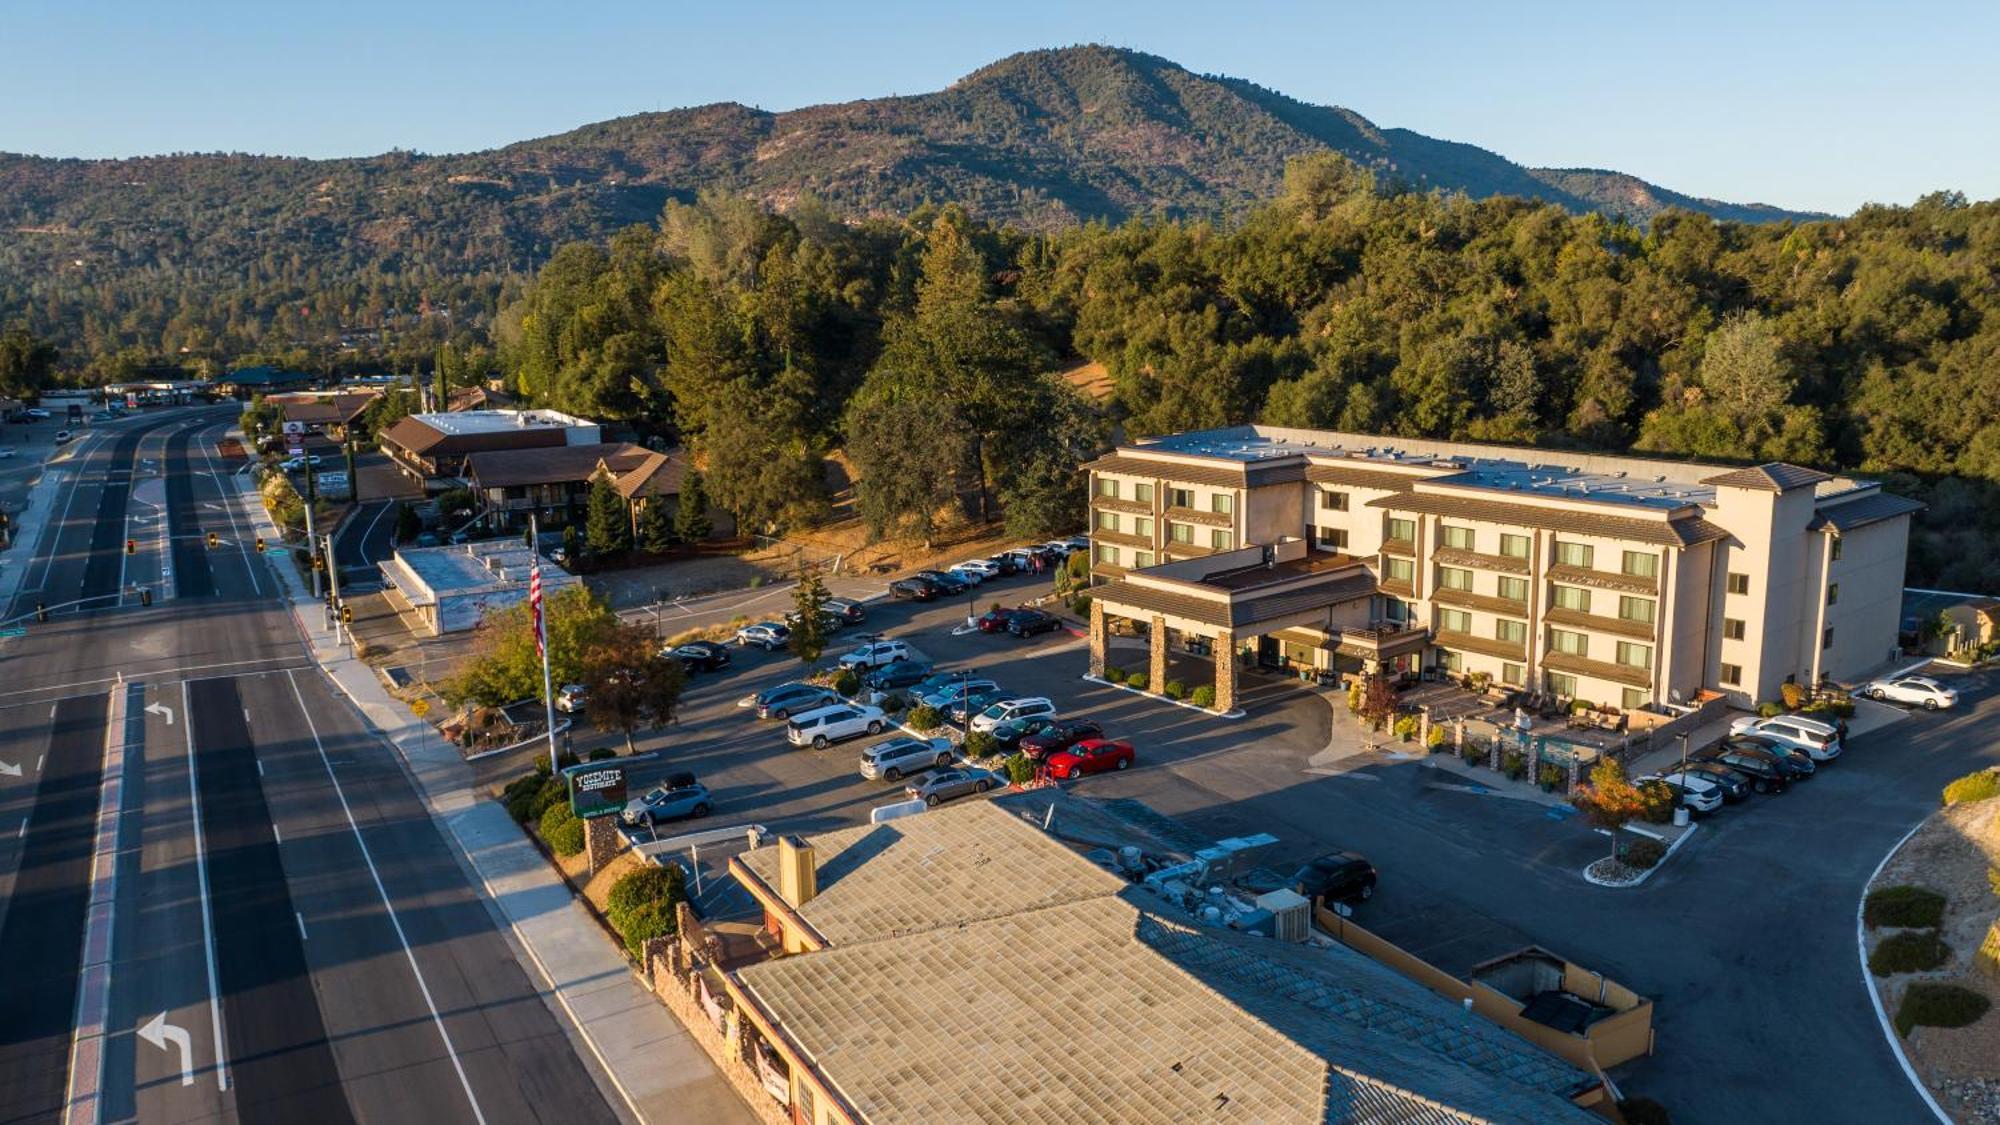 Yosemite Southgate Hotel & Suites Oakhurst Exterior photo